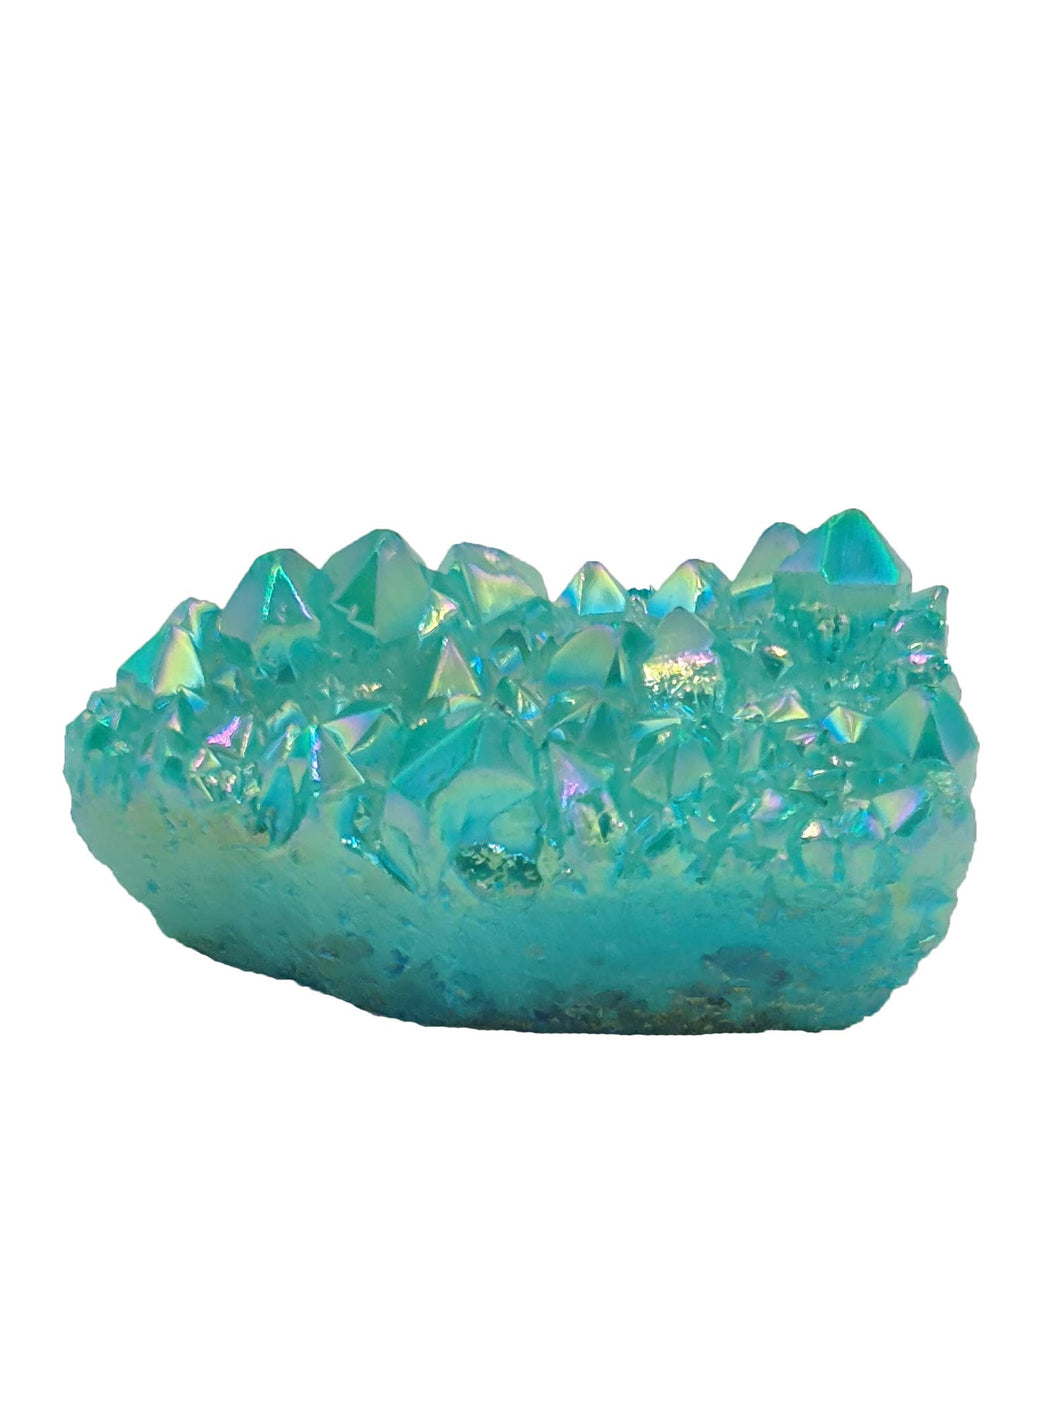 Aura Quartz aqua green-Oddball Crystals